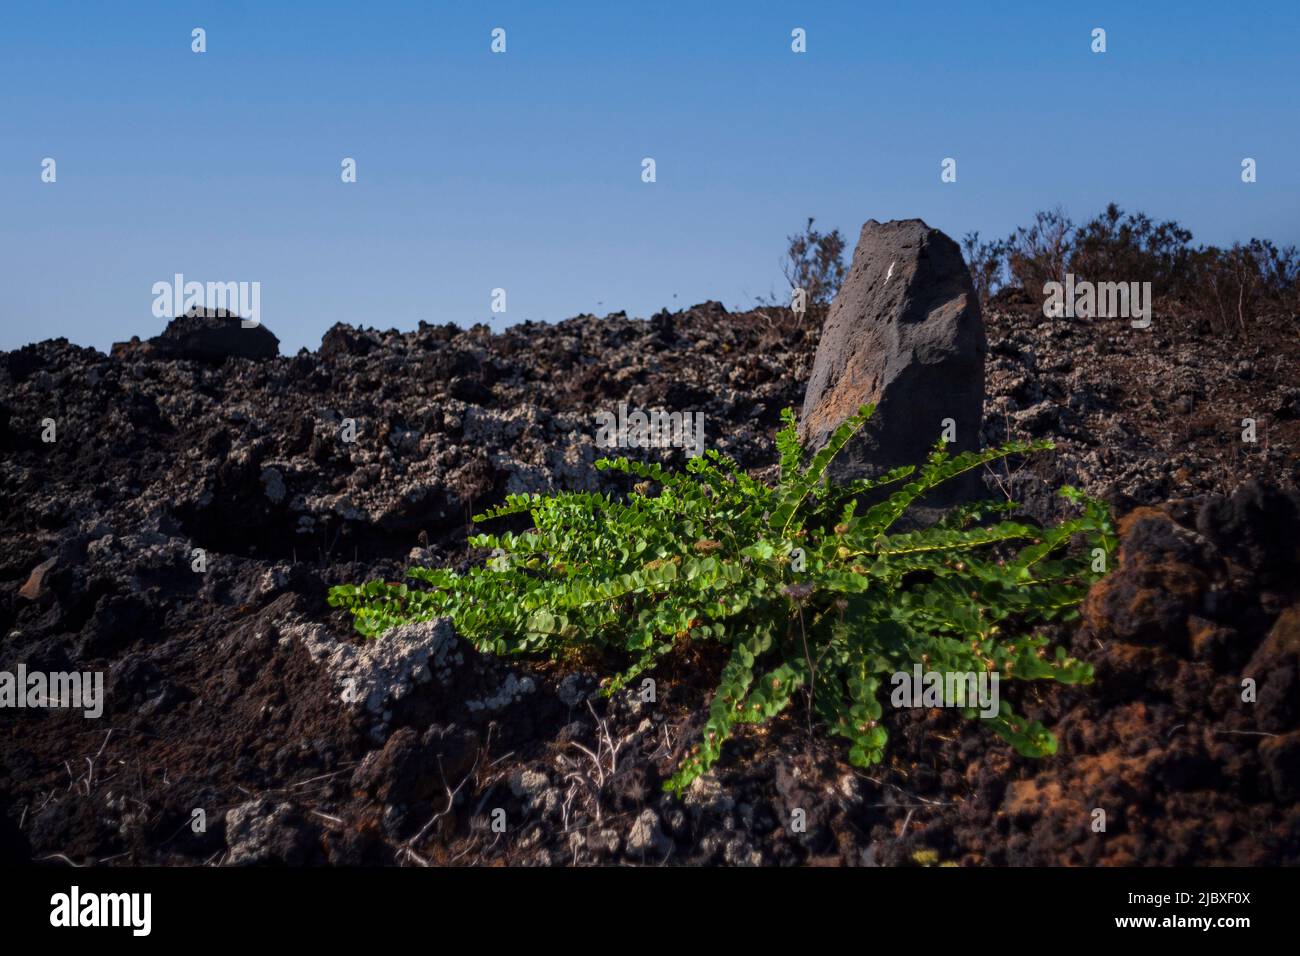 Vista de la planta de Capers en las rocas de lava, Sicilia Foto de stock